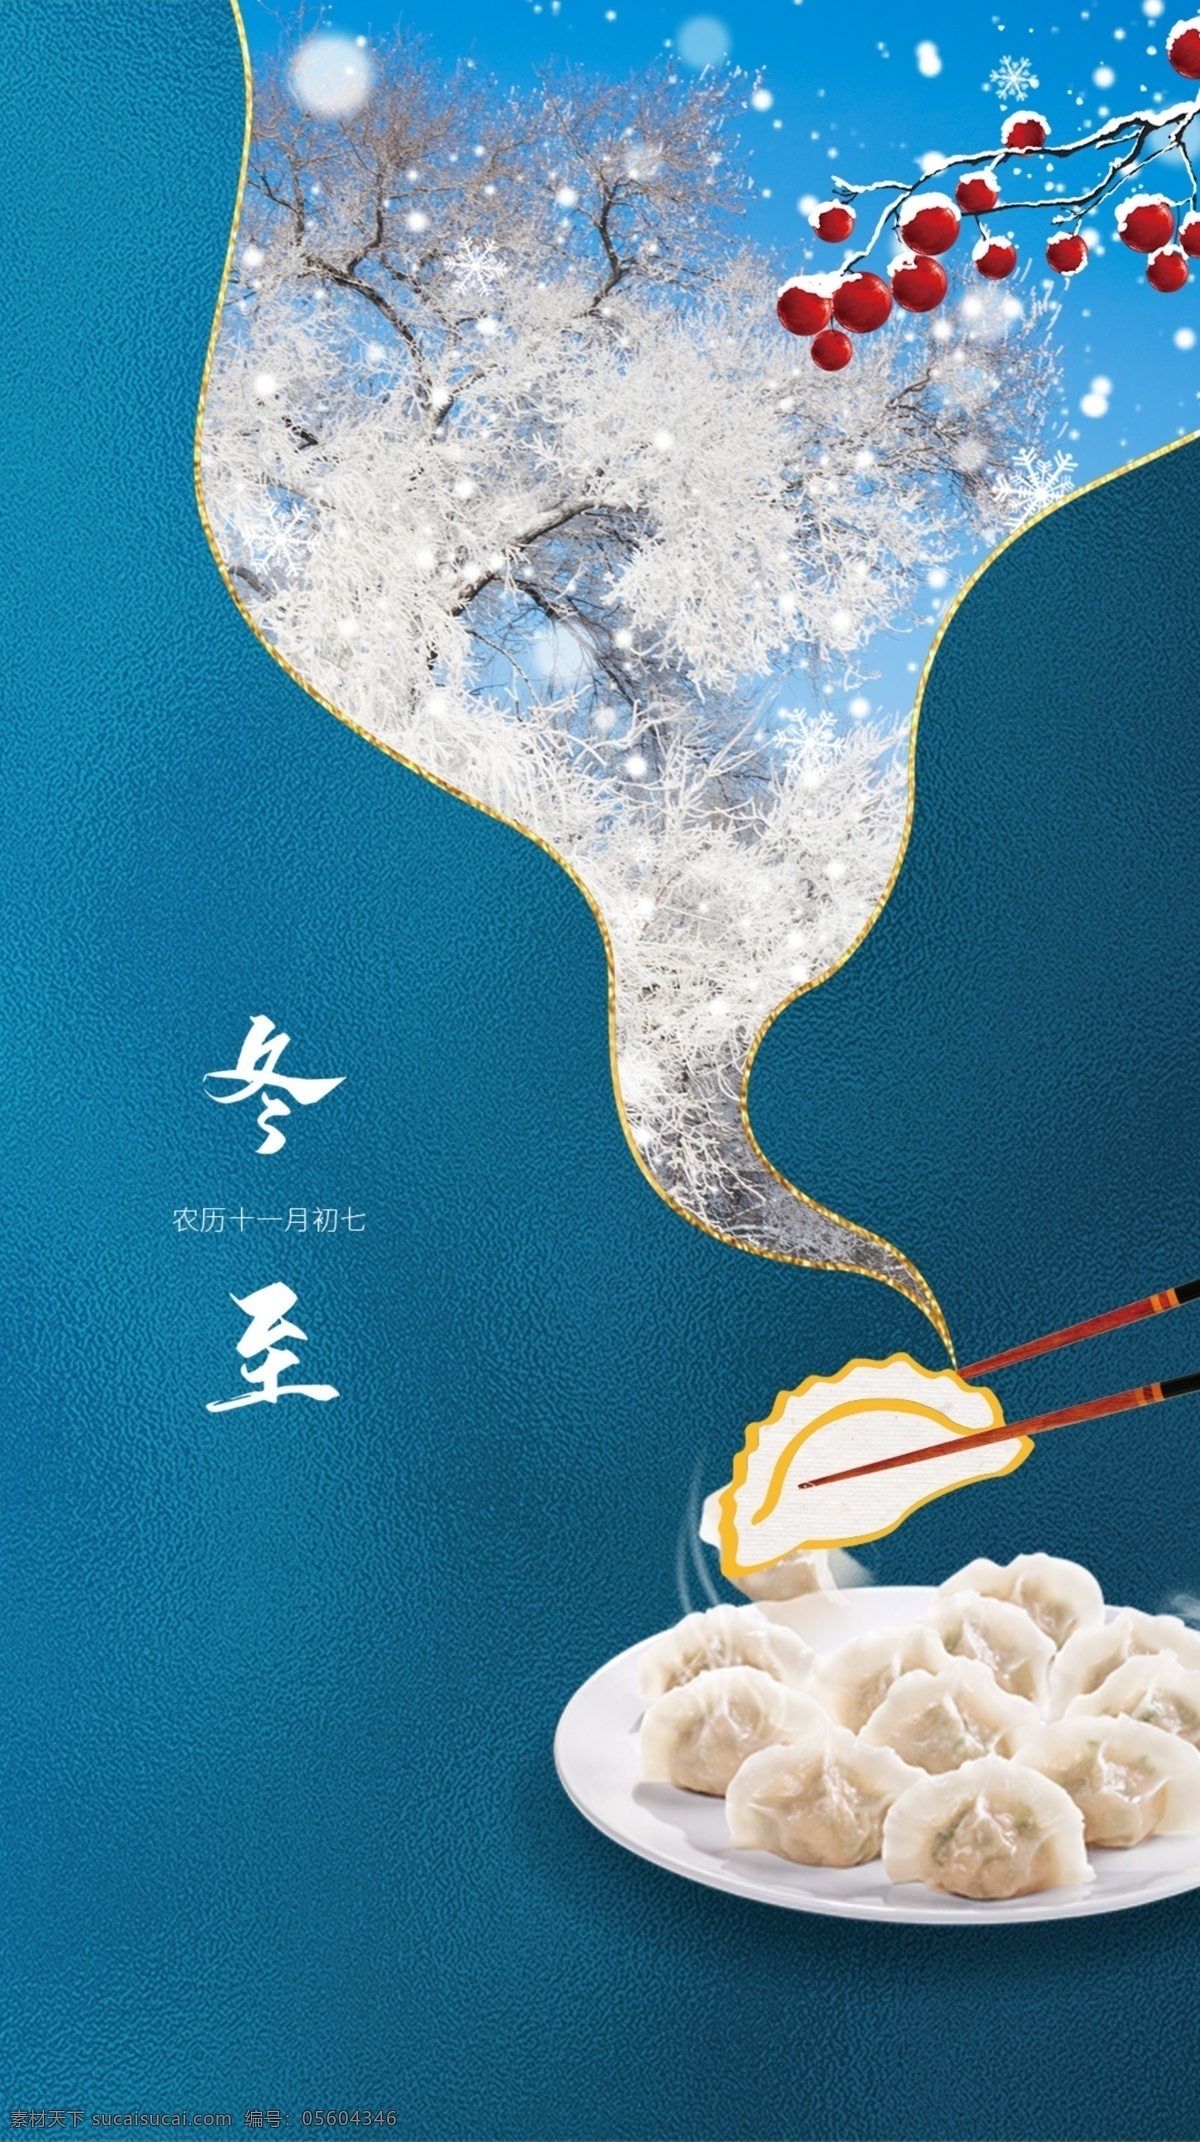 冬至 节气海报图片 24节气 简约广告设计 创意设计 传统节日 饺子创意 分层